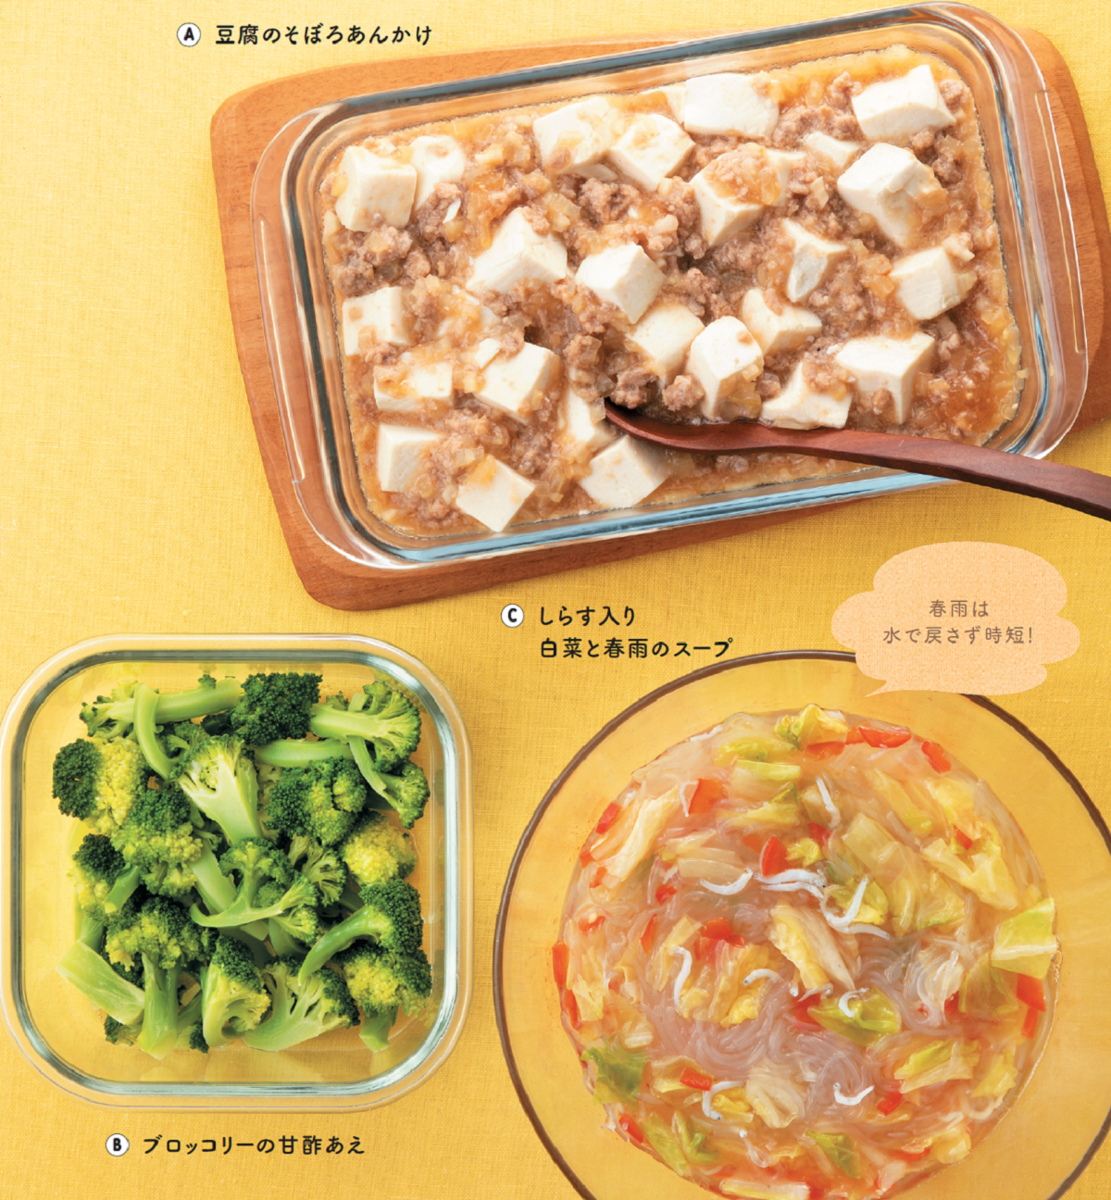 初めての中華に 豆腐のそぼろあんかけ 春雨スープ ほか 1歳半 5歳 子どもと食べたいレンチン作りおき Vol 4 マイナビ子育て